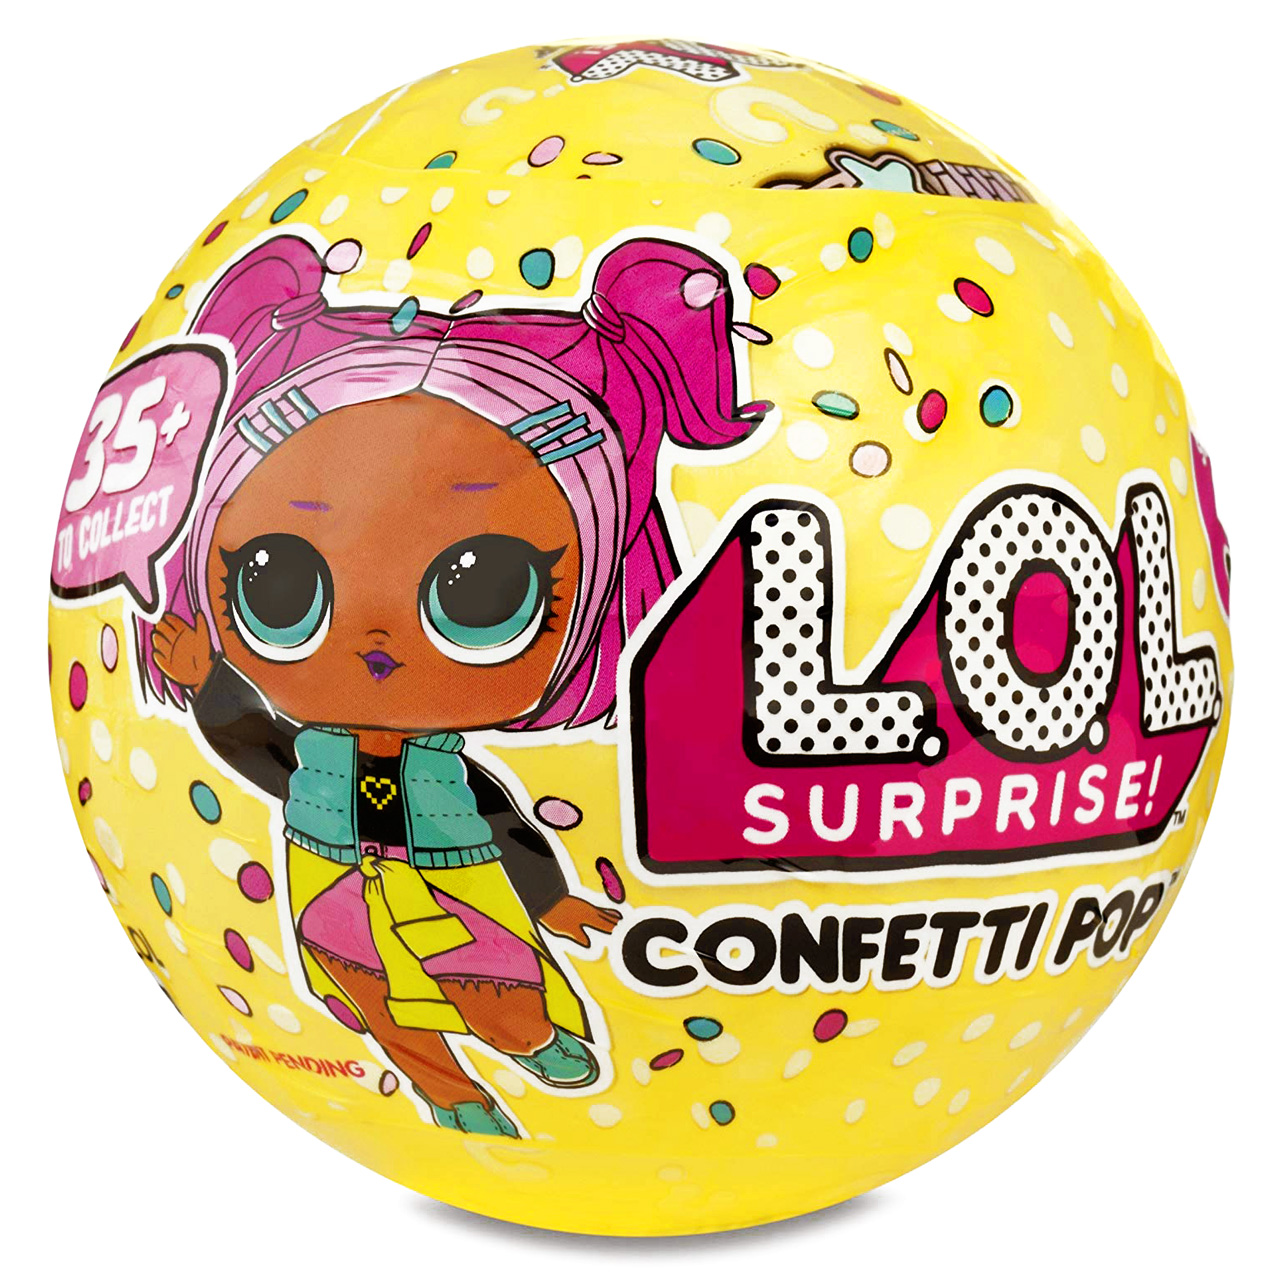 نقد و بررسی اسباب بازی شانسی ال او ال سورپرایز مدل confetti pop کد 951598 توسط خریداران